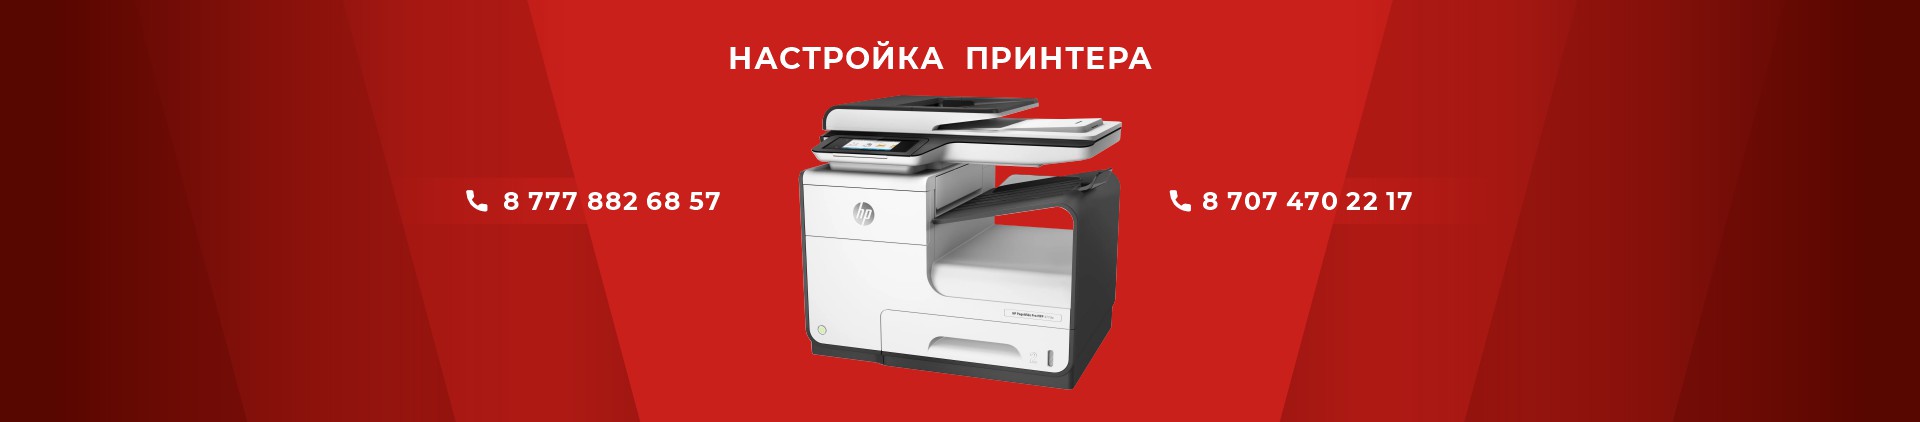 Настройка принтера в Астане